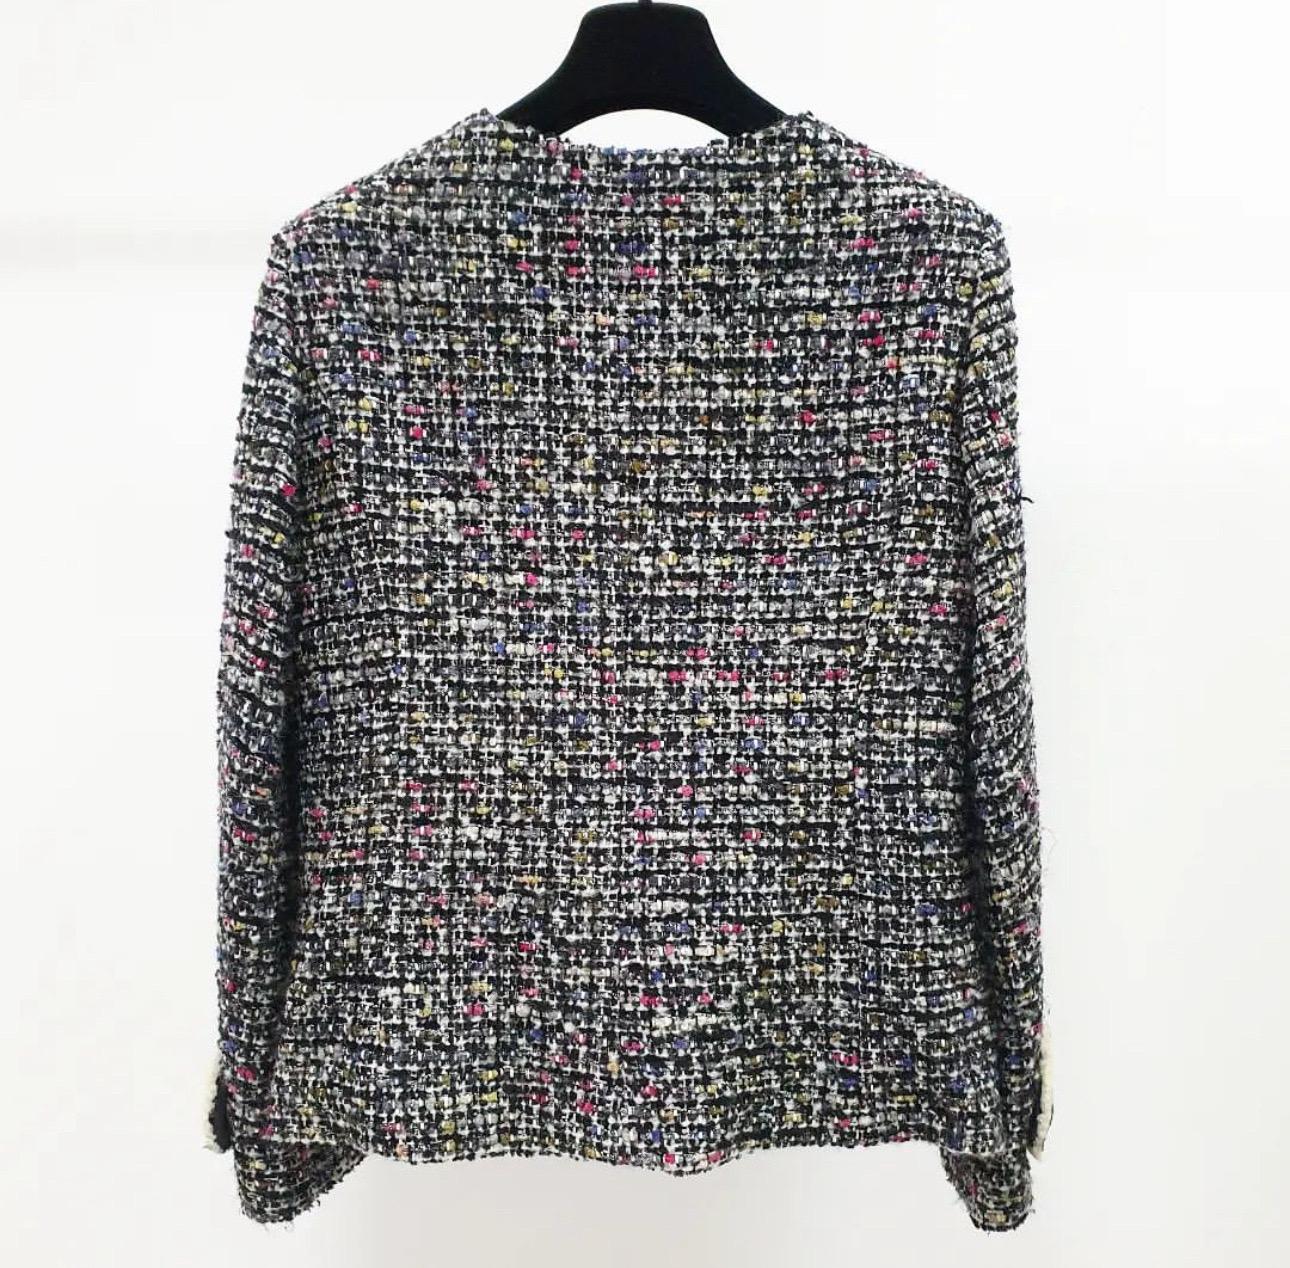 Dies ist eine sehr schöne Chanel Tweed x Shearling Jacke mit Turnlock CC Marke.

Die Größe ist 38

Die stilvolle Farbe des Tweeds besteht teilweise aus Shearling, was ihm einen sehr luxuriösen Charakter verleiht.

Der CC-Charme mit dem Drehschloss